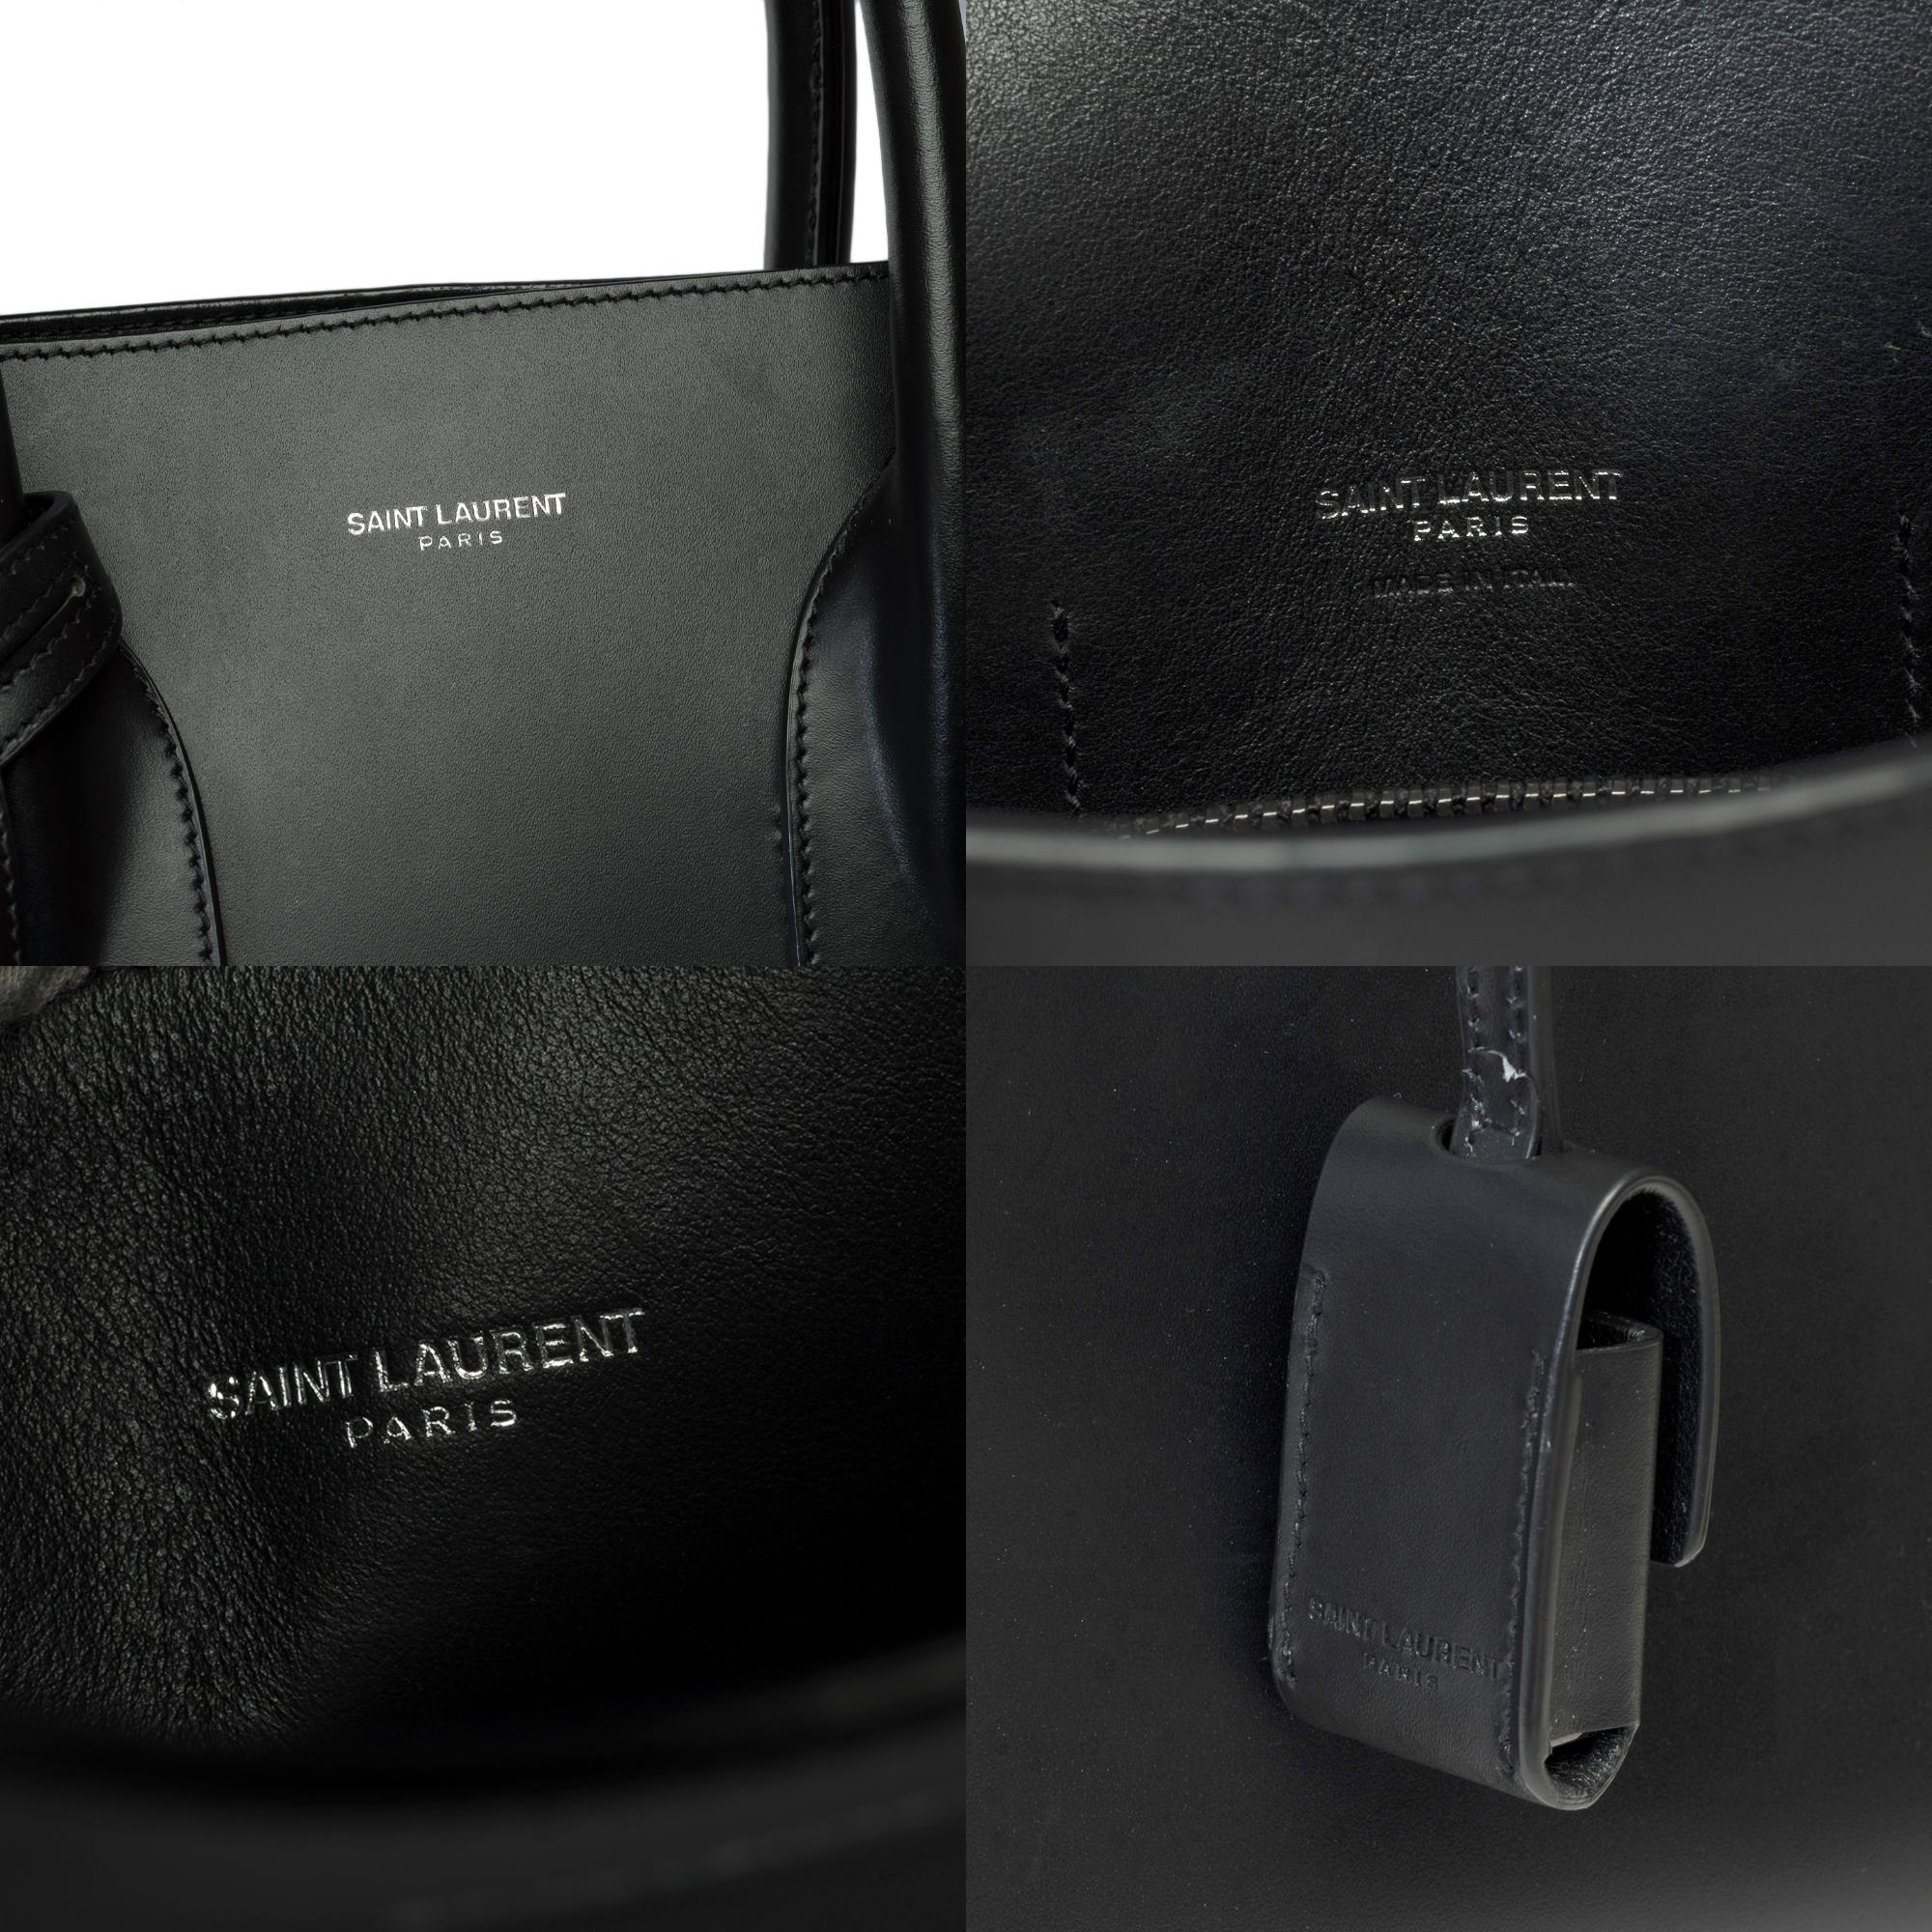 Saint Laurent Sac de Jour Small size handbag strap in black Box calf leather For Sale 4